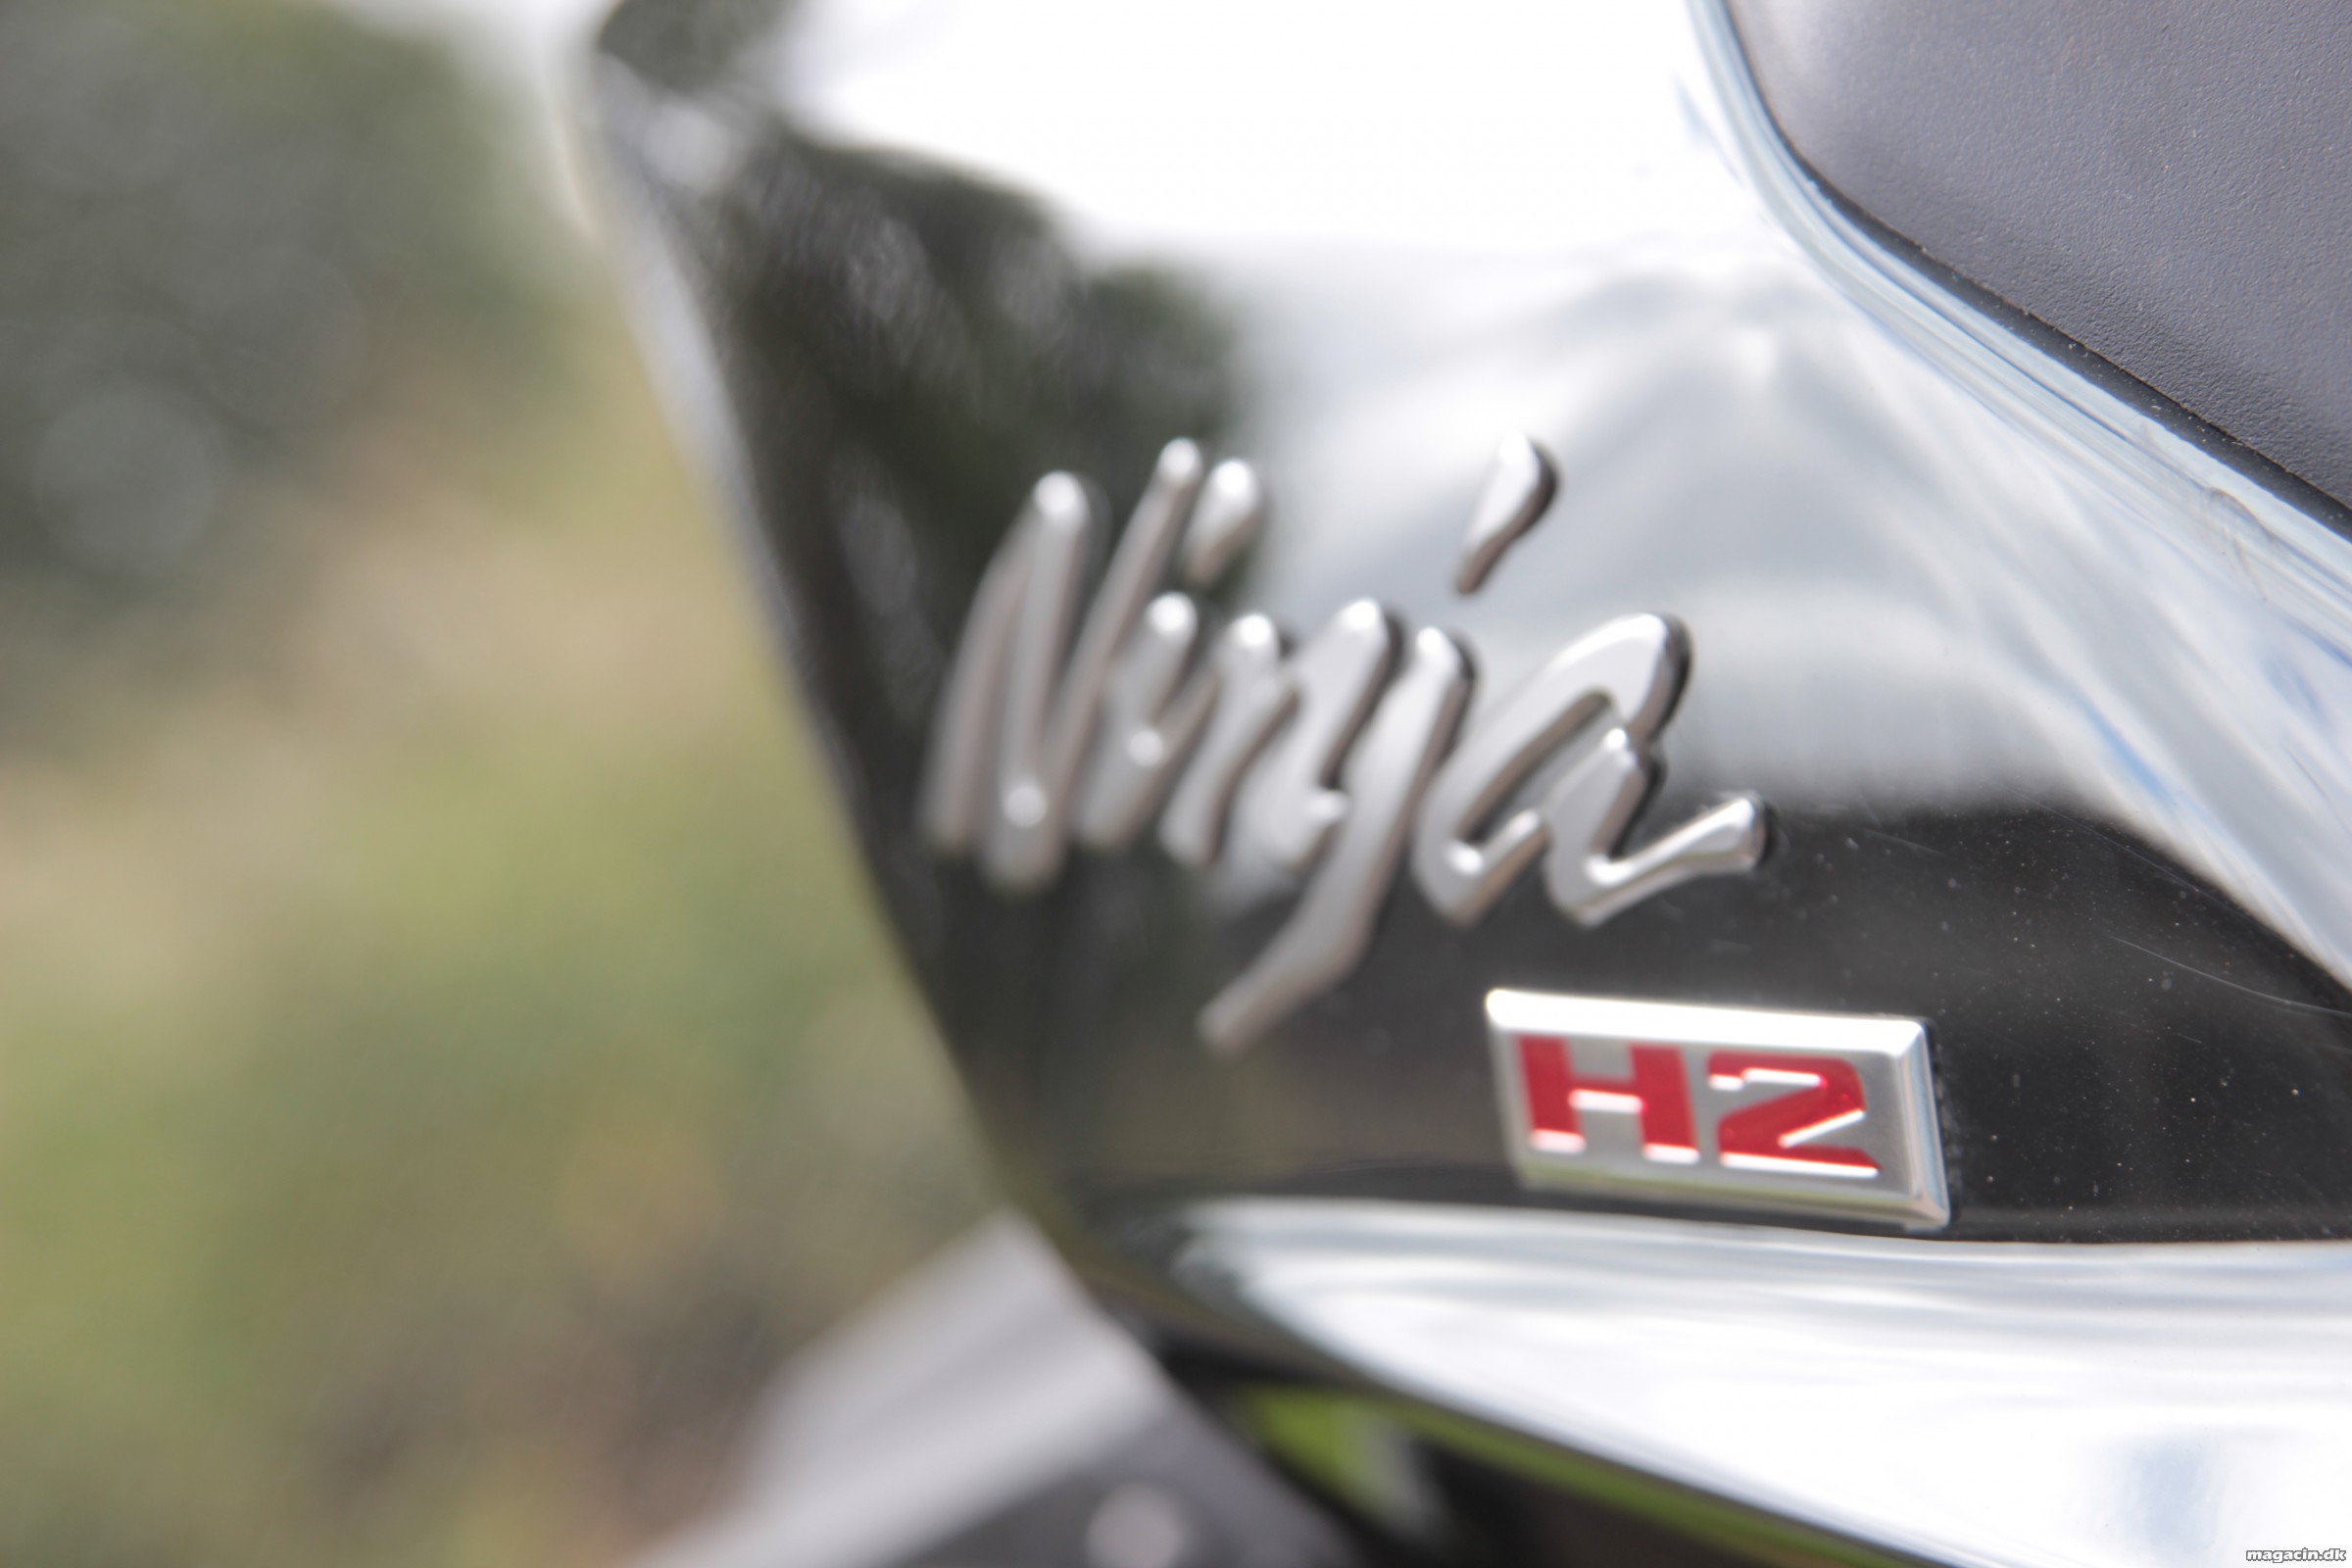 Prøvekørt: 2015 Kawasaki H2 – På tur med klodens vildeste MC